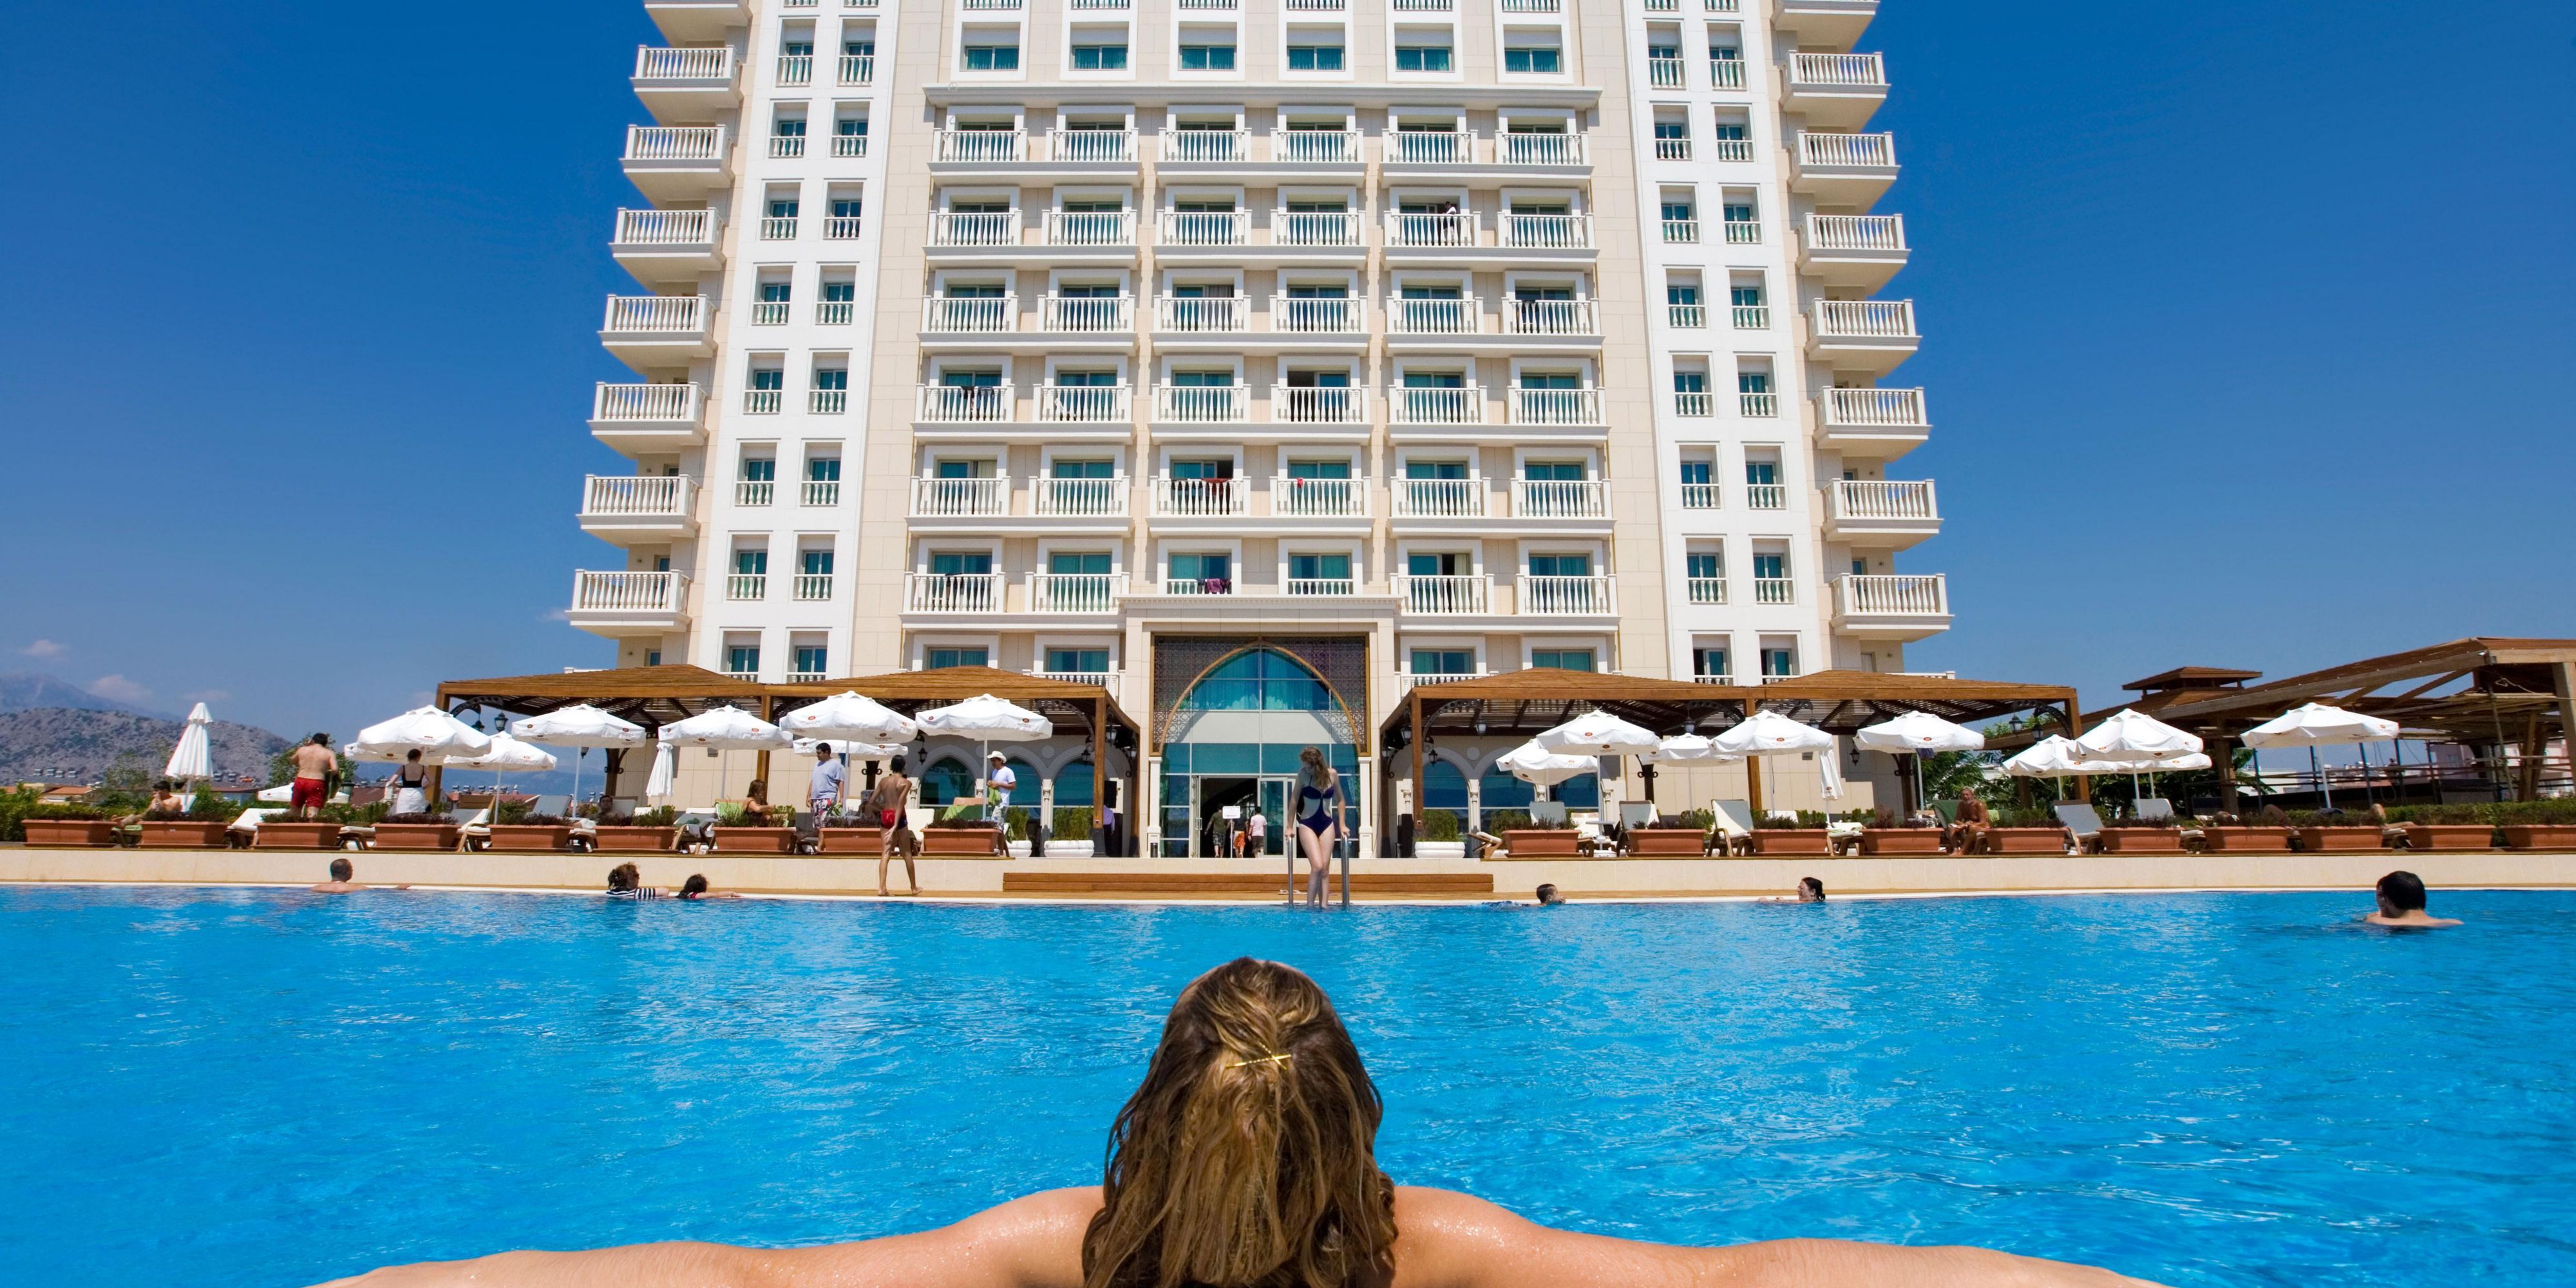 4 Star Hotels Near Antalya Crowne Plaza Antalya